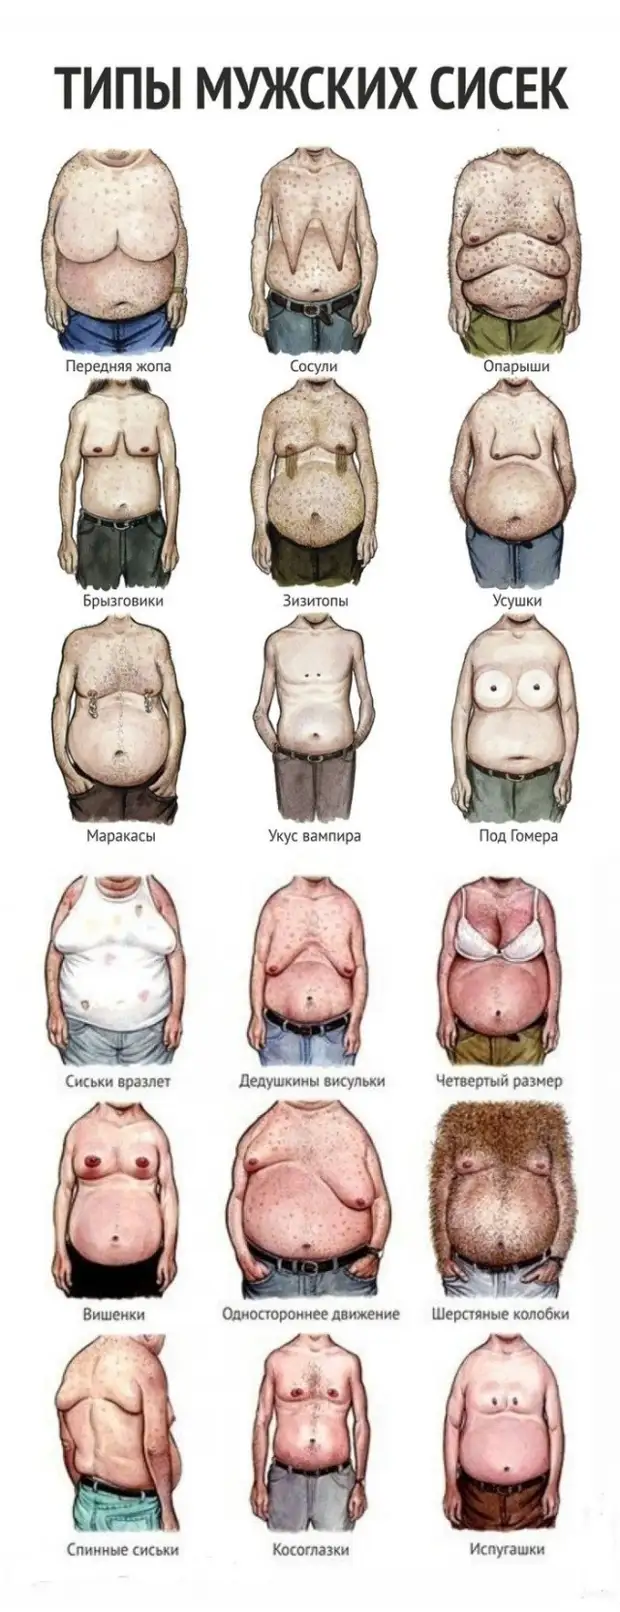 виды груди разных женщин фото 19